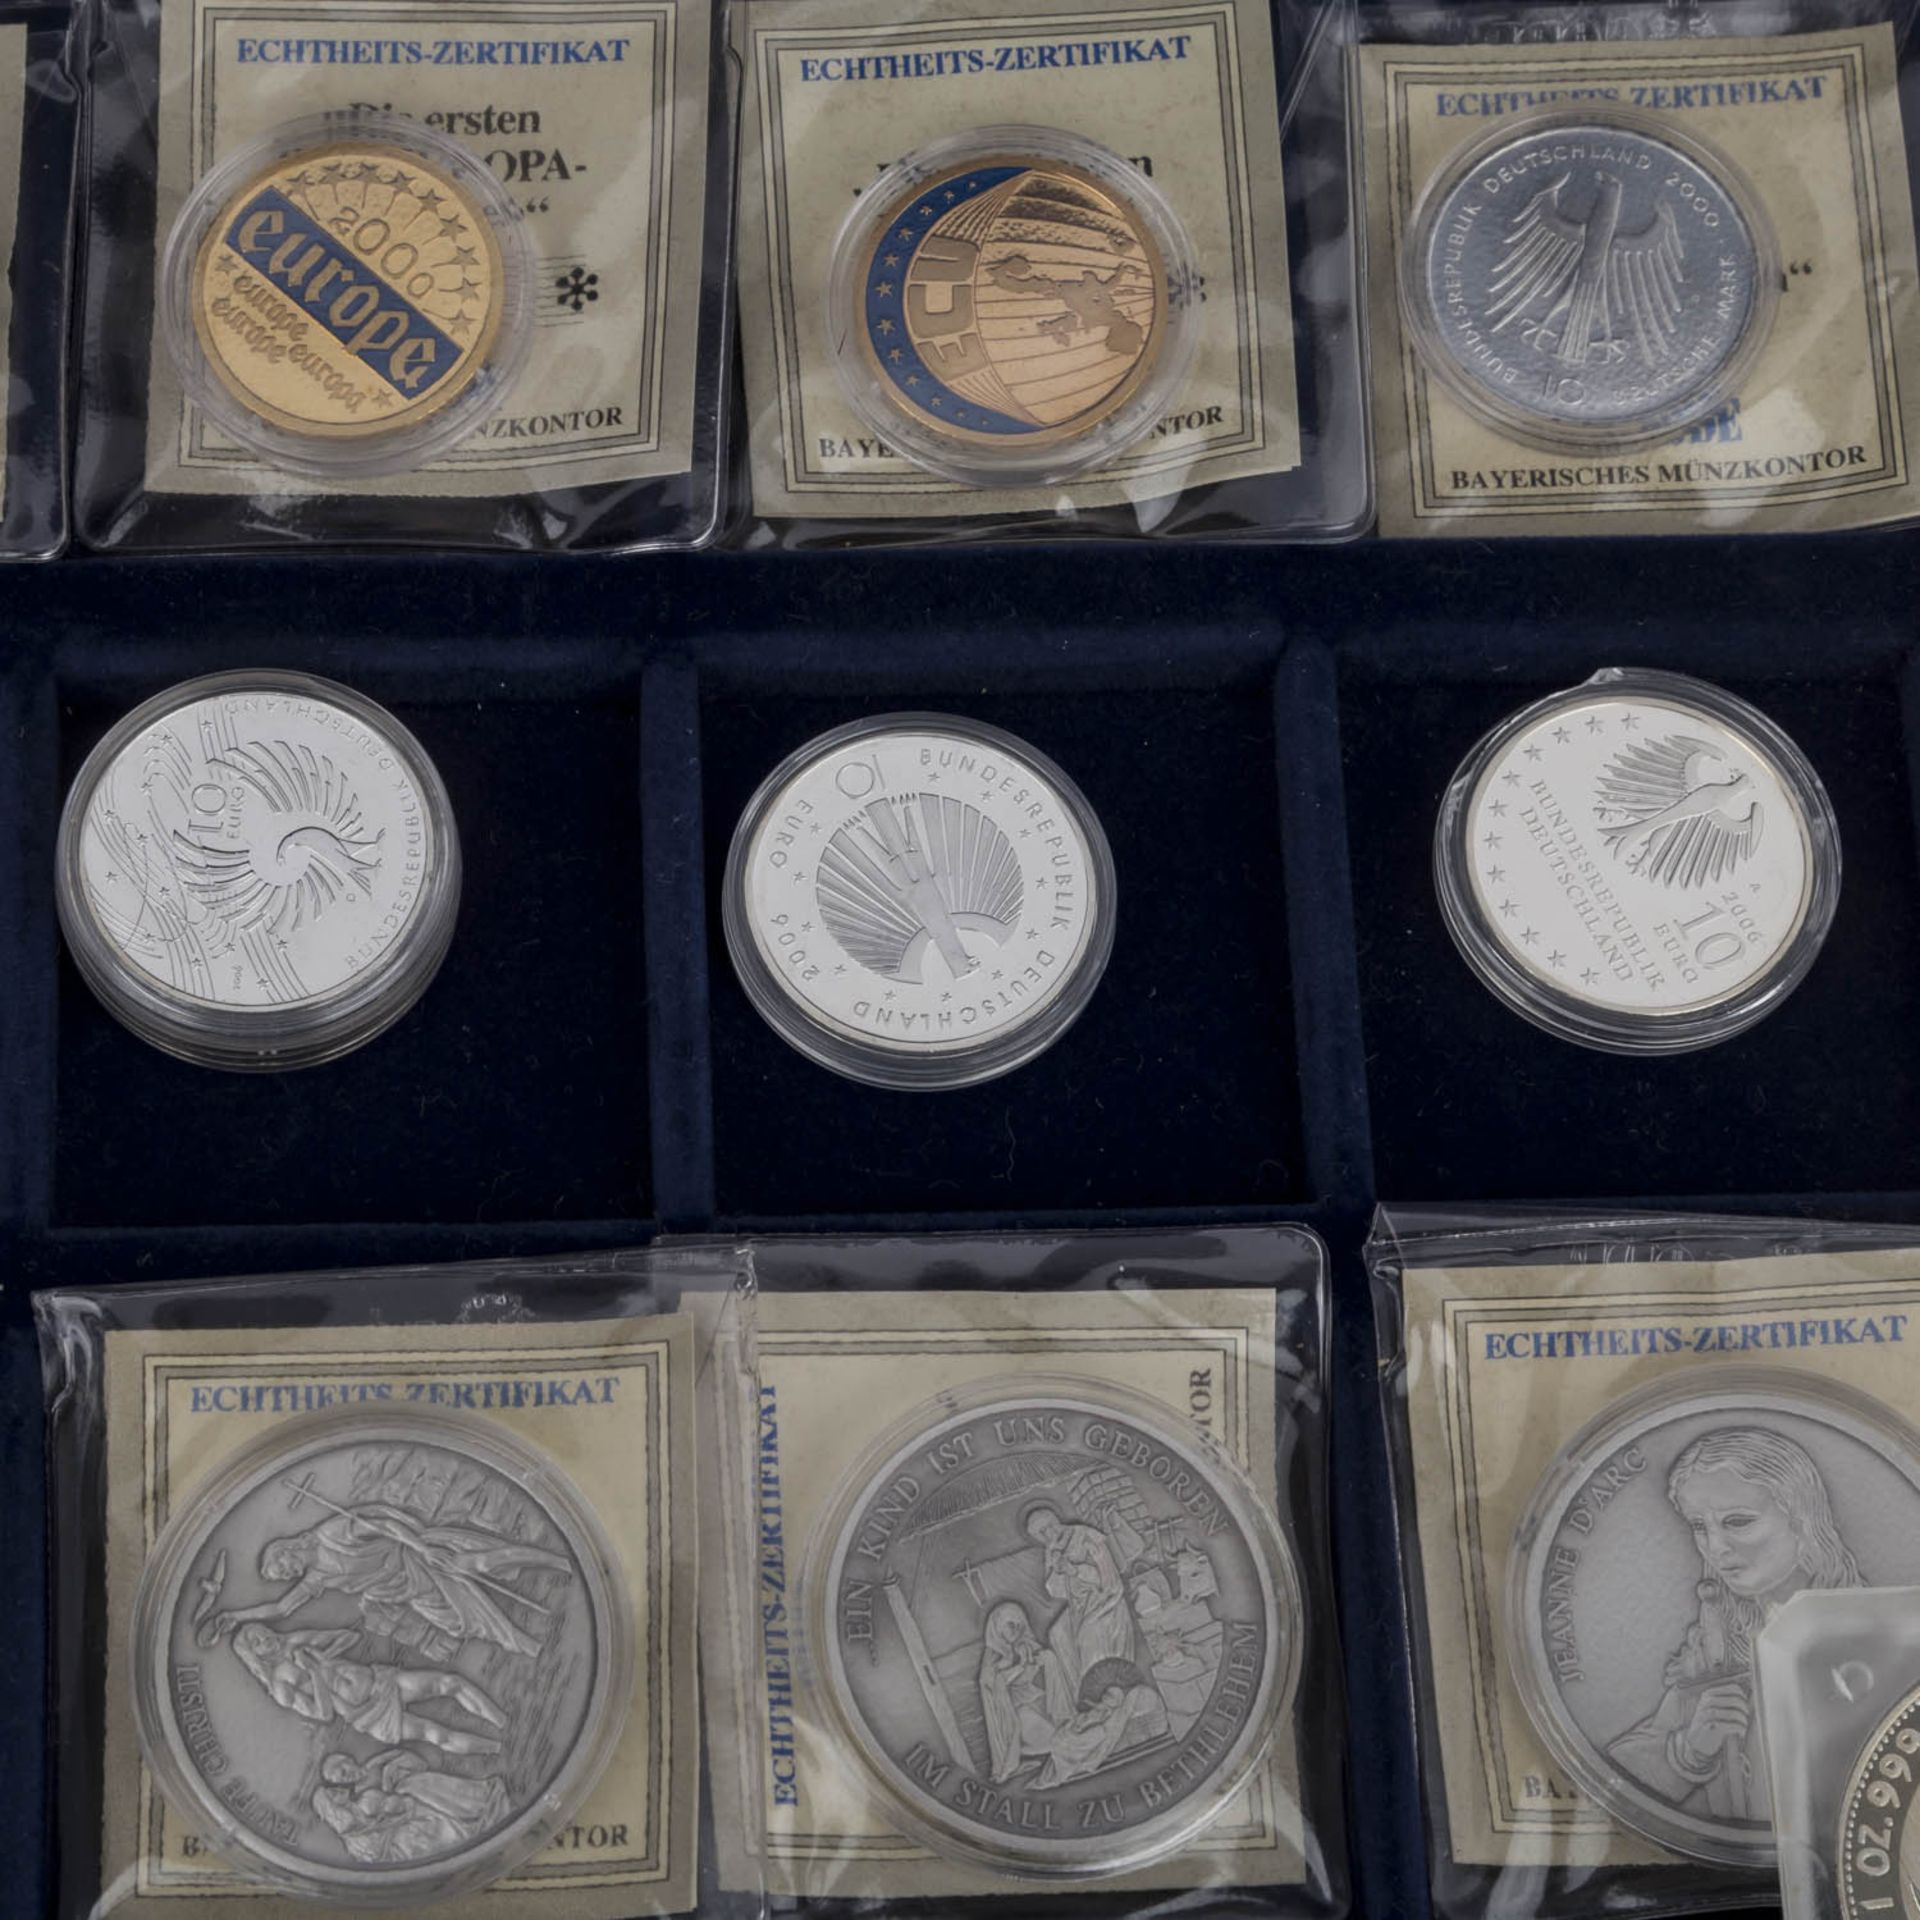 Lot aus diversen Münzen und Medaillen,mit Anteil Gold in der Form von Medaille 6,2 g fein "Mozart" - Bild 4 aus 6